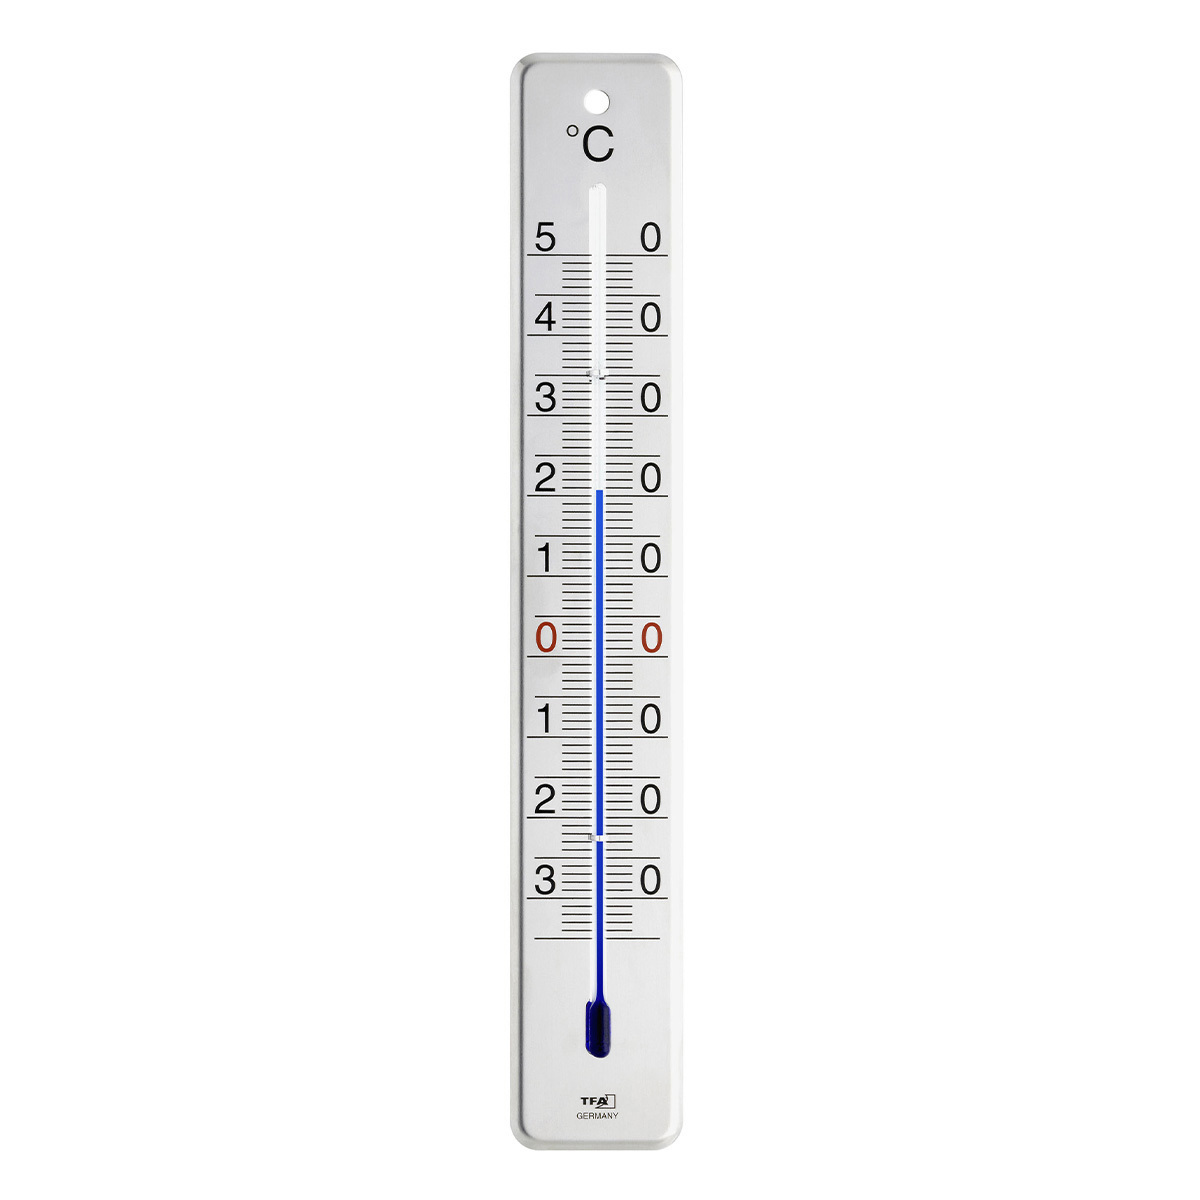 Analoges Innen-Außen-Thermometer aus Edelstahl